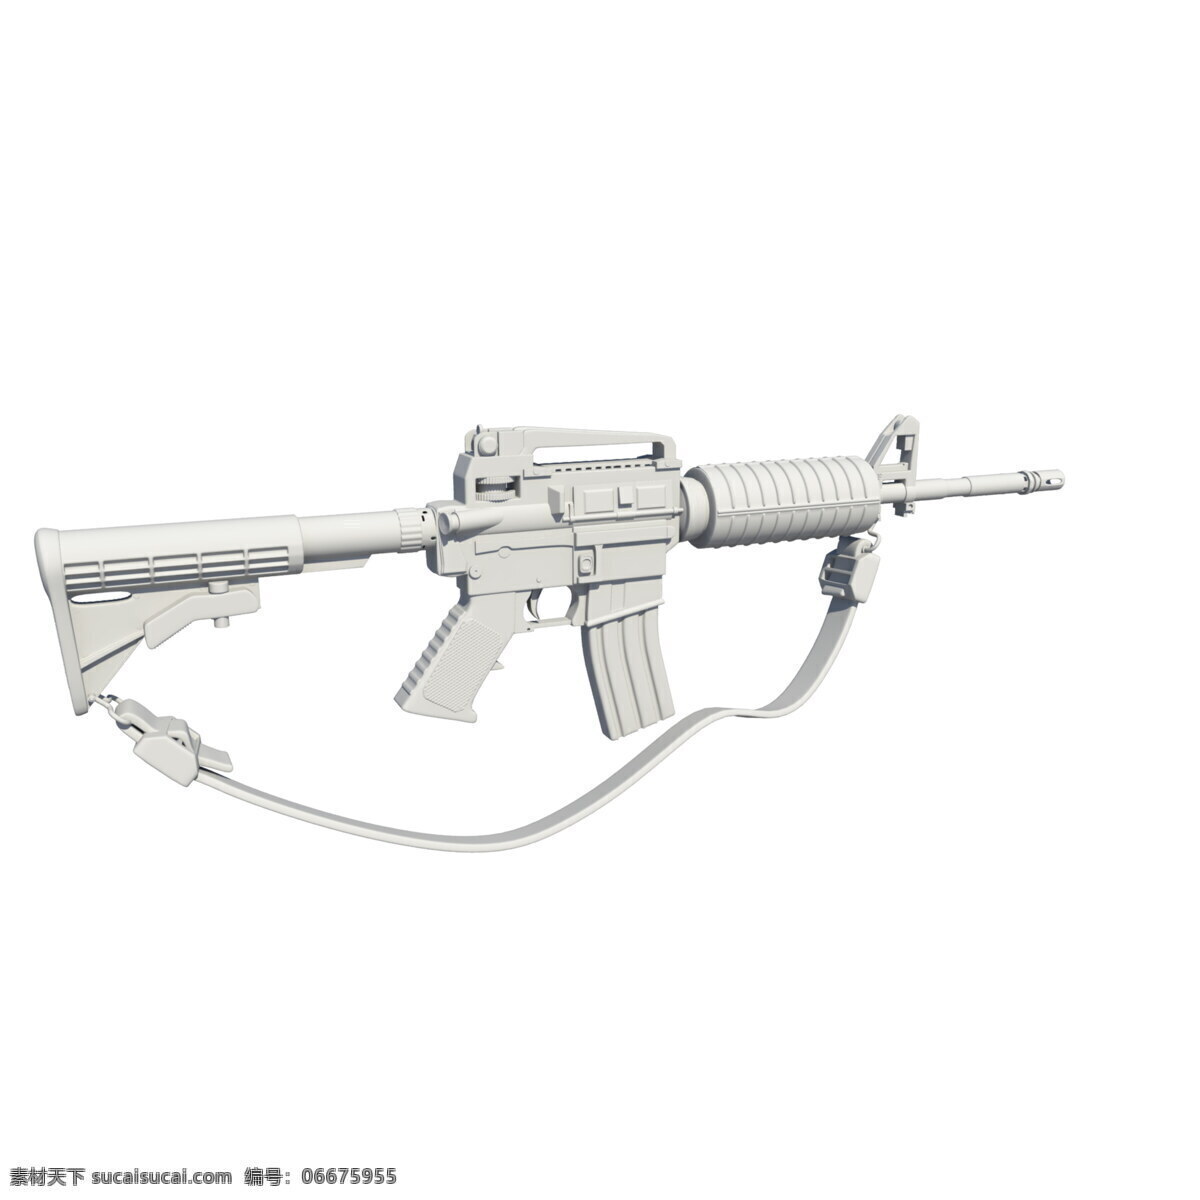 m4a1 模型 3d maya 枪械 建模 3d设计 3d作品